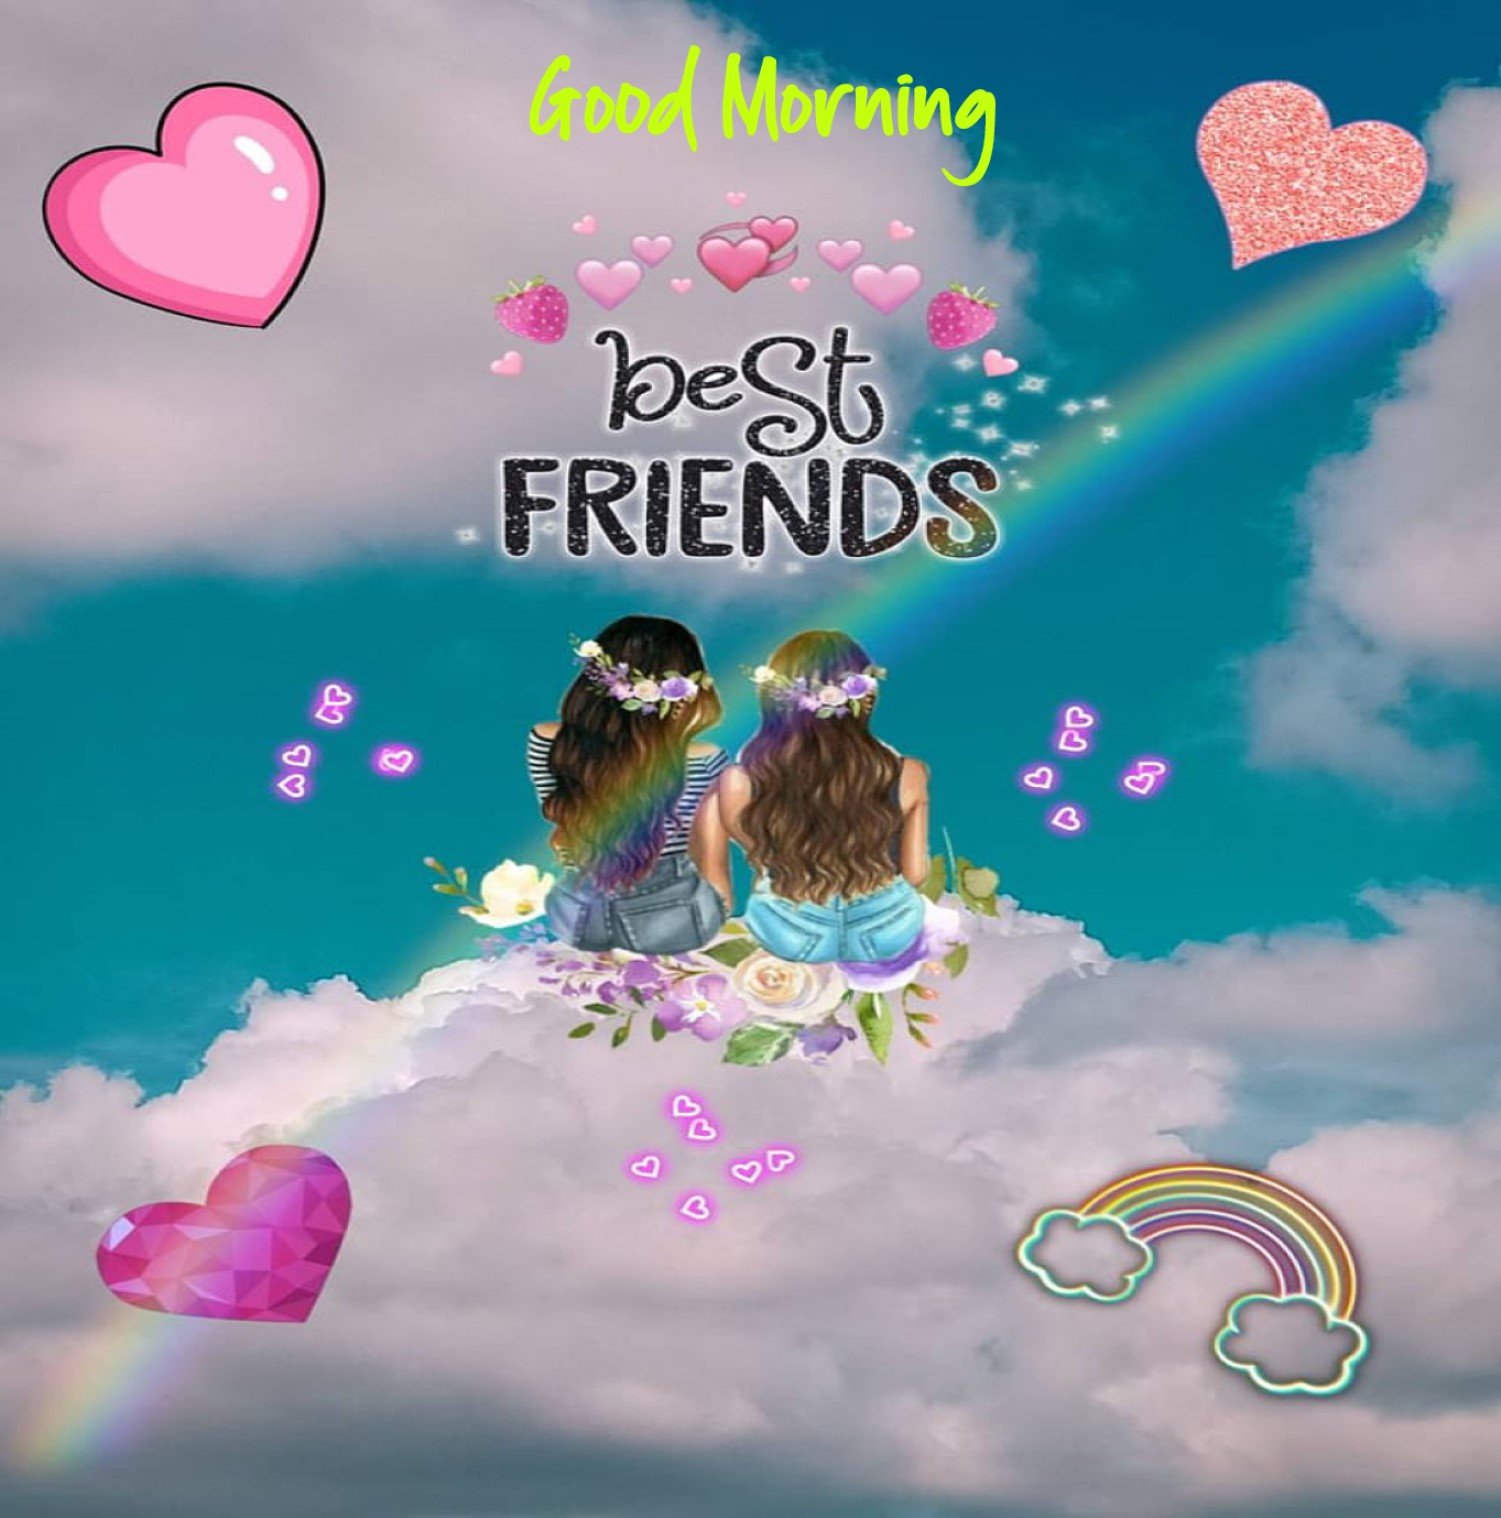 New Style Good Morning Best Friend 2023 Images Whatsapp Feeling Joyful